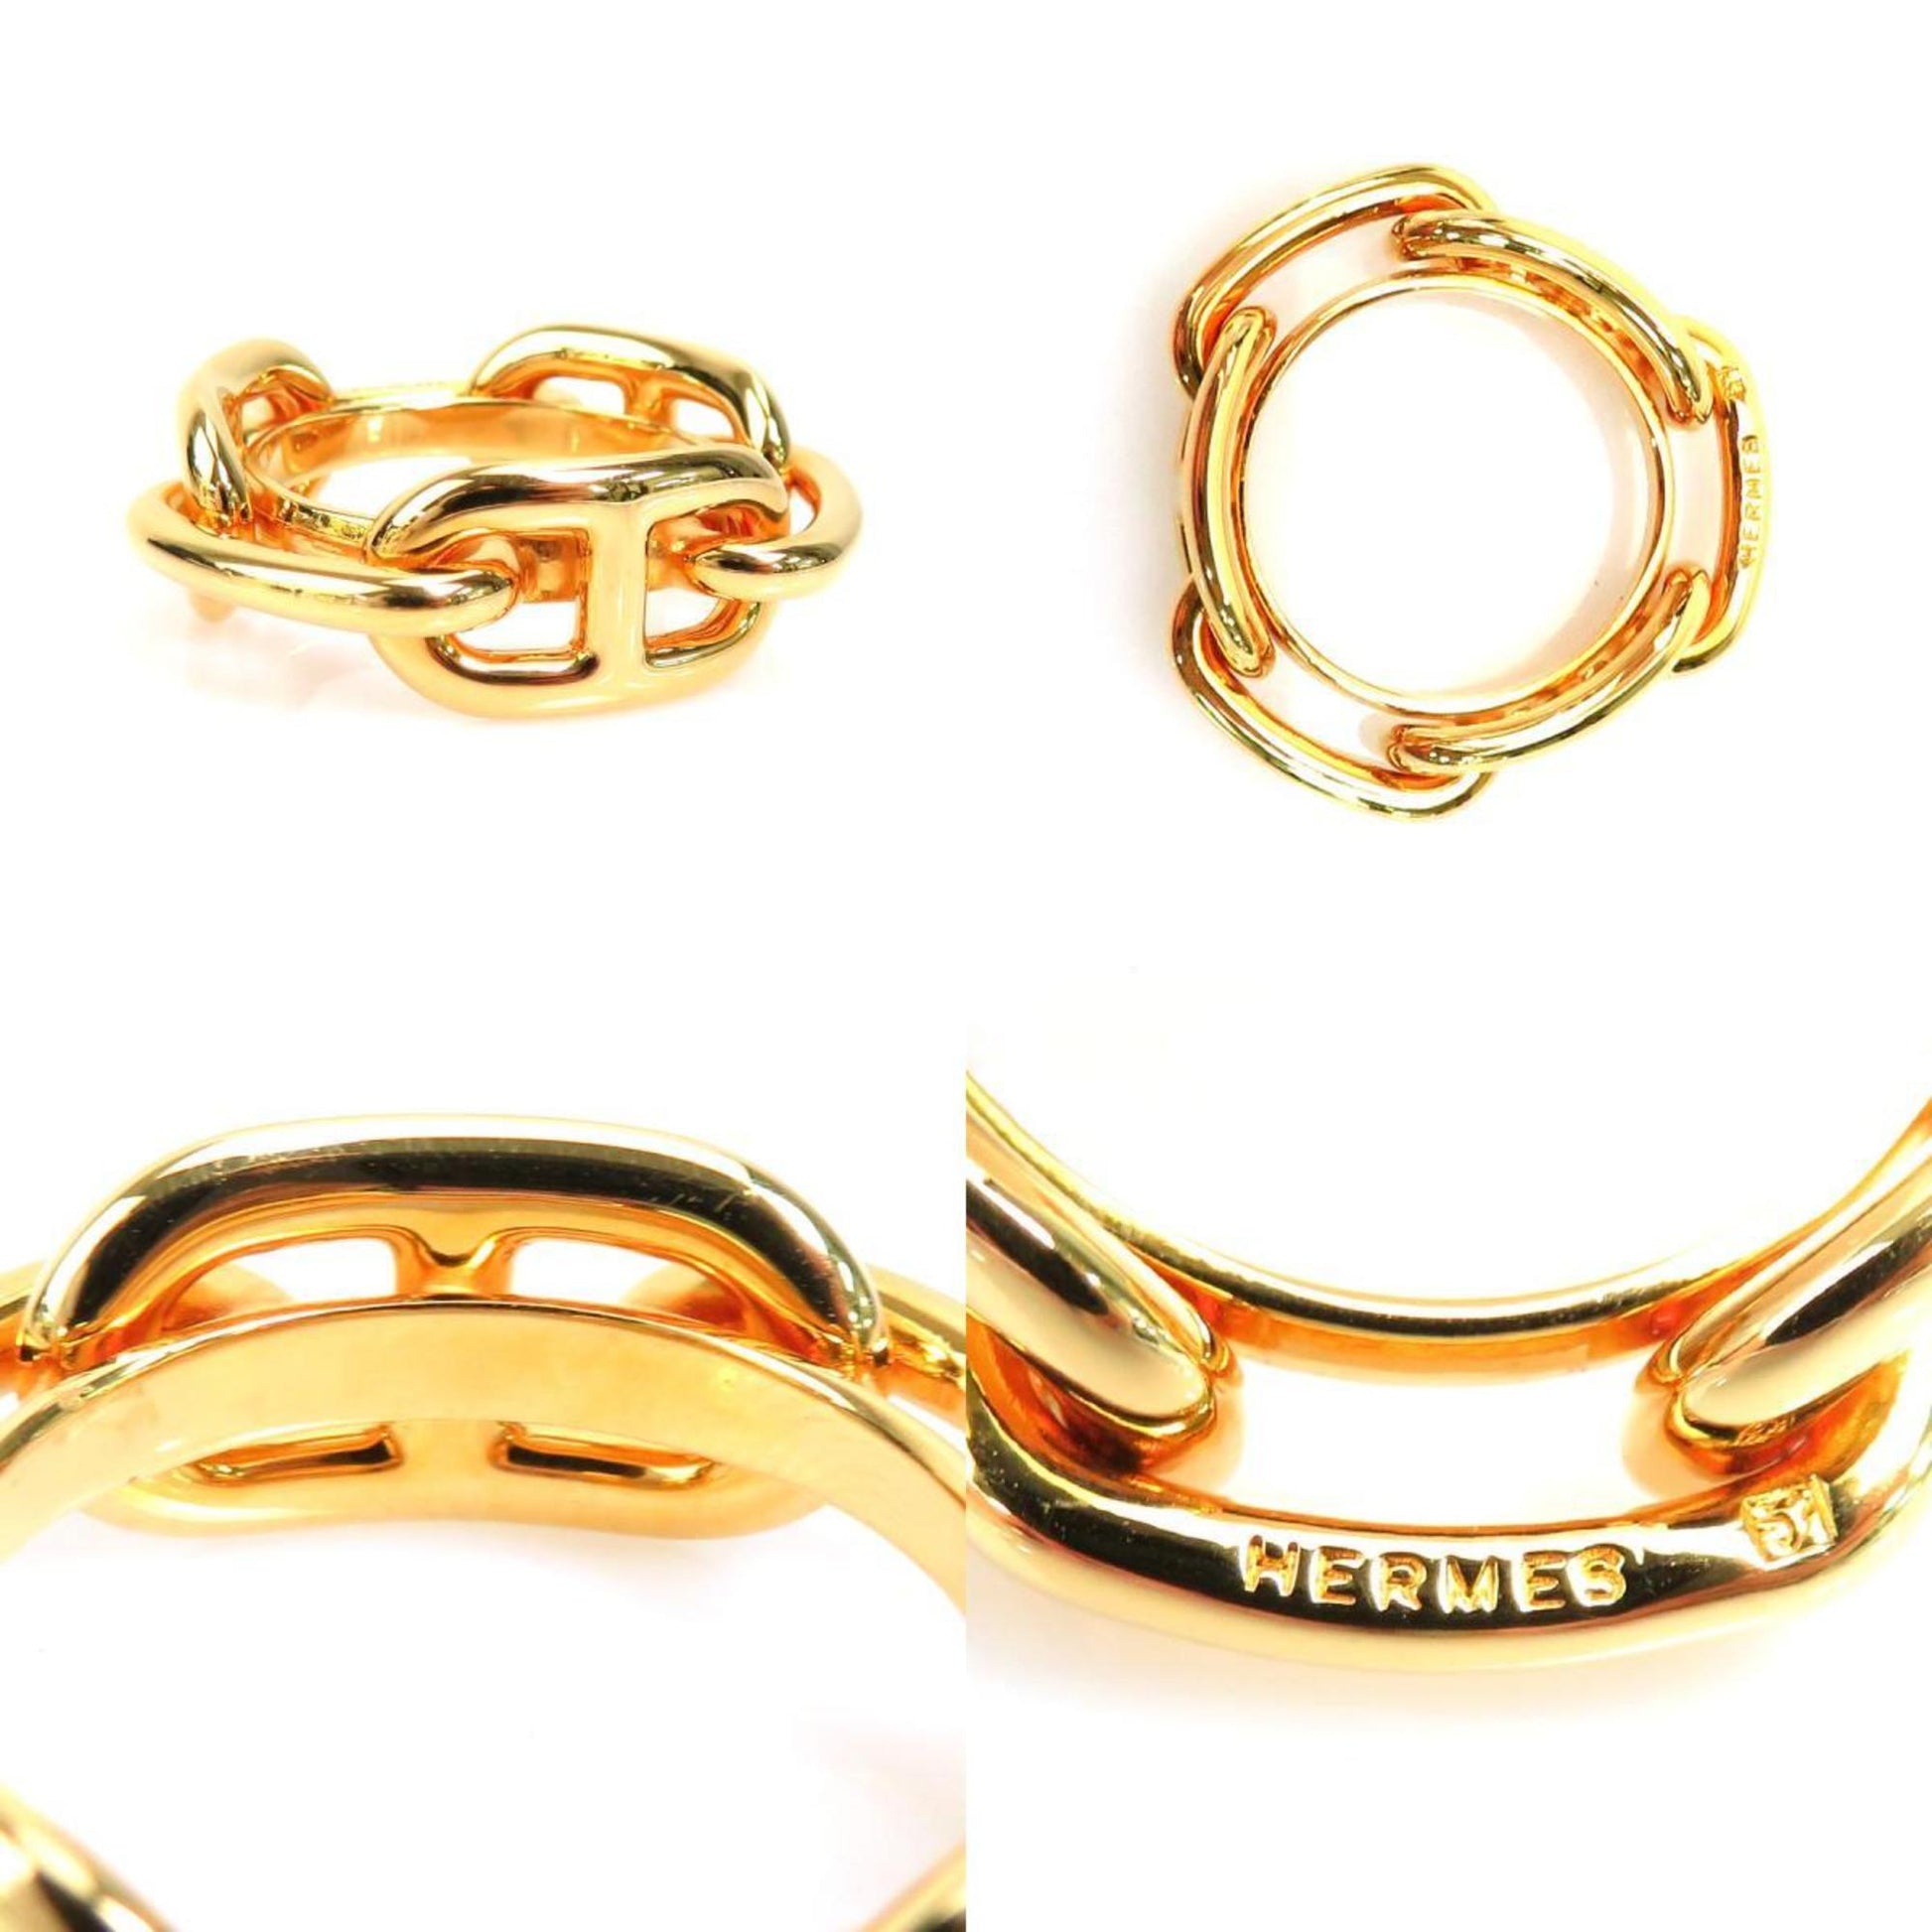 Hermes HERMES Scarf Ring Shane Dunkle Metal Gold Women's